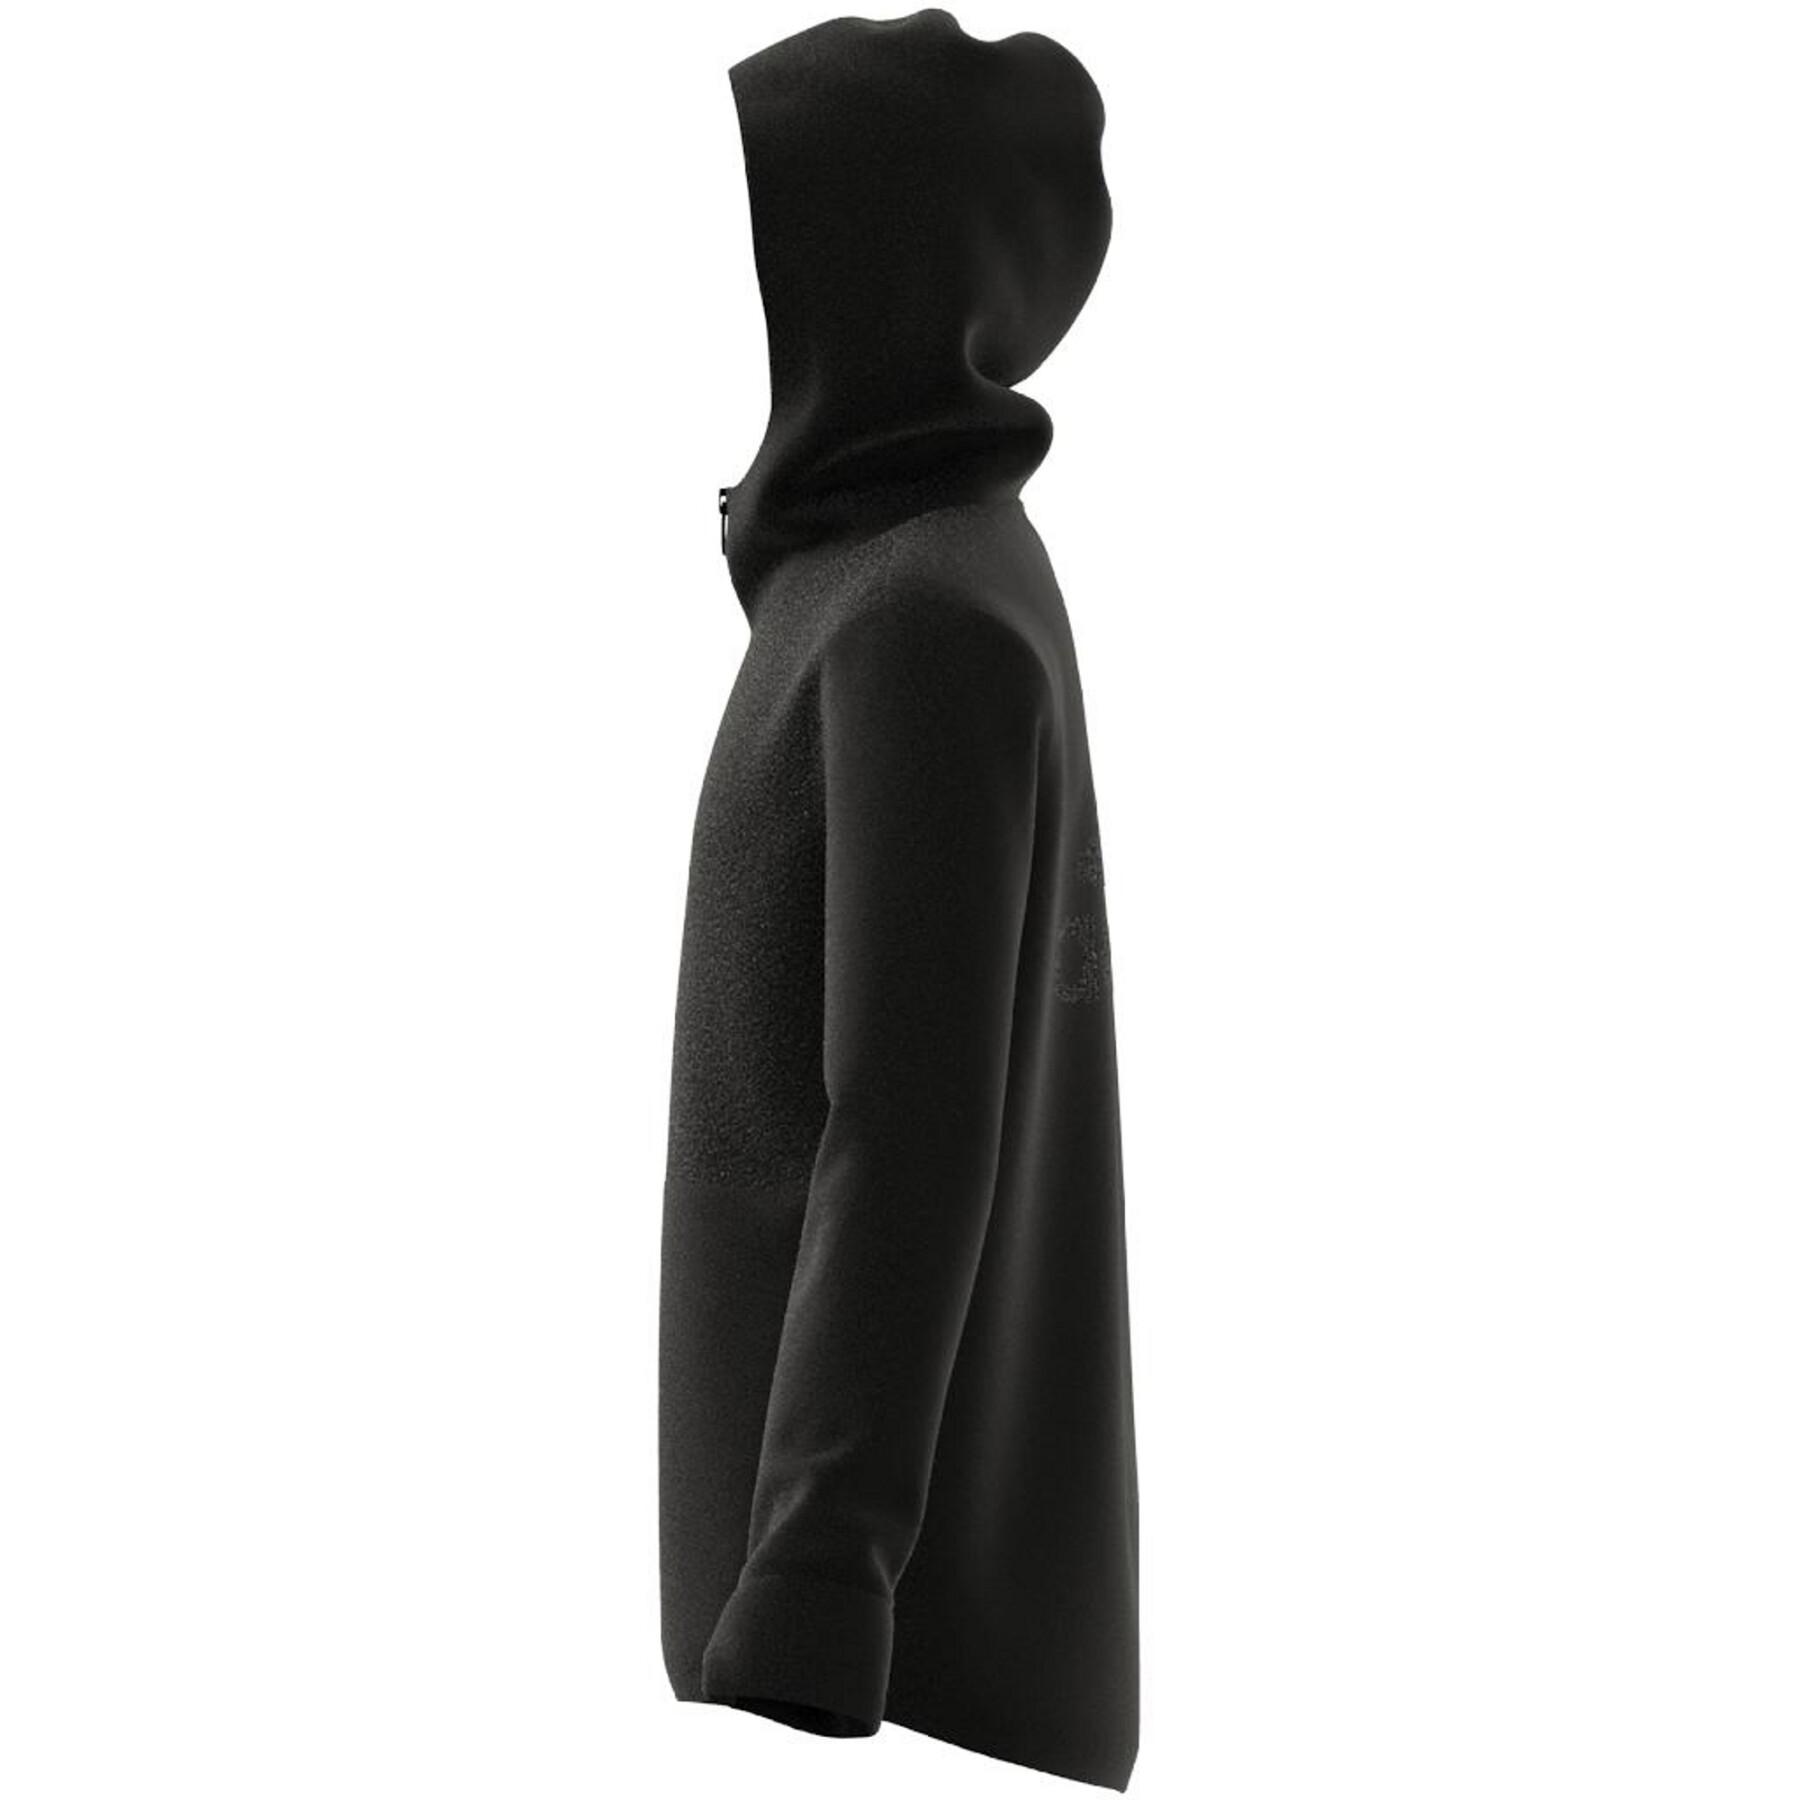 Sudadera con capucha para niños adidas Designed to Move Fleece (Gender Neutral)